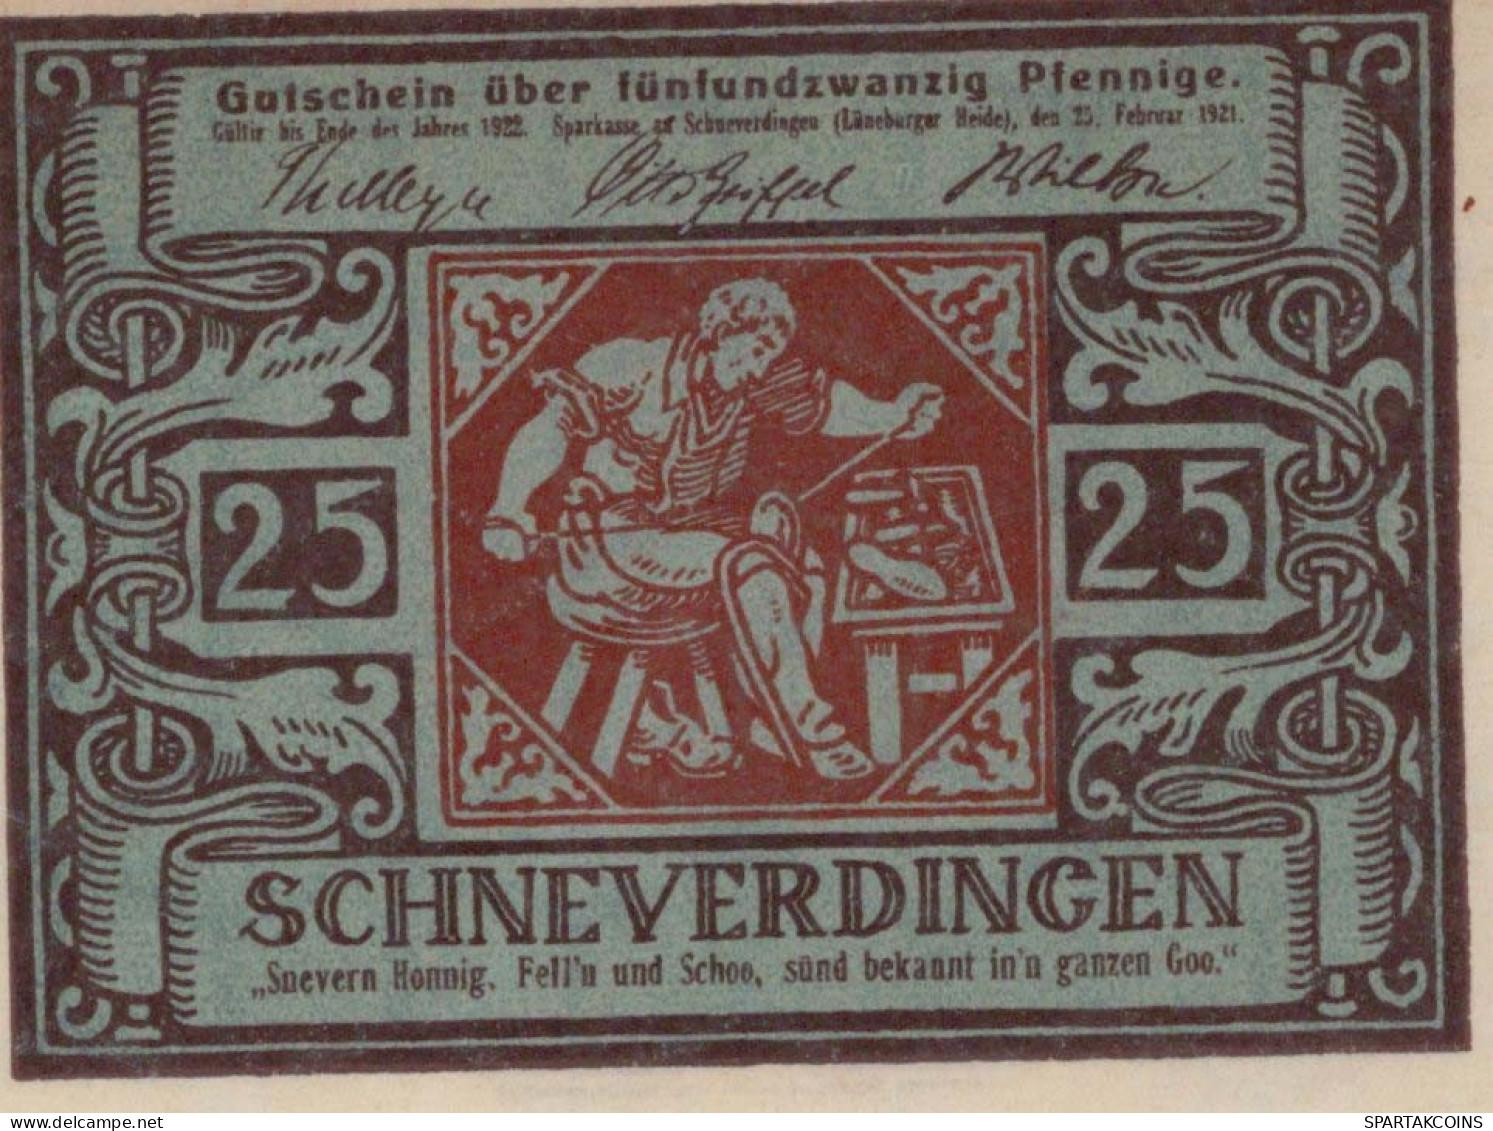 25 PFENNIG 1921 Stadt SCHNEVERDINGEN Hanover UNC DEUTSCHLAND Notgeld #PH960 - [11] Emissions Locales